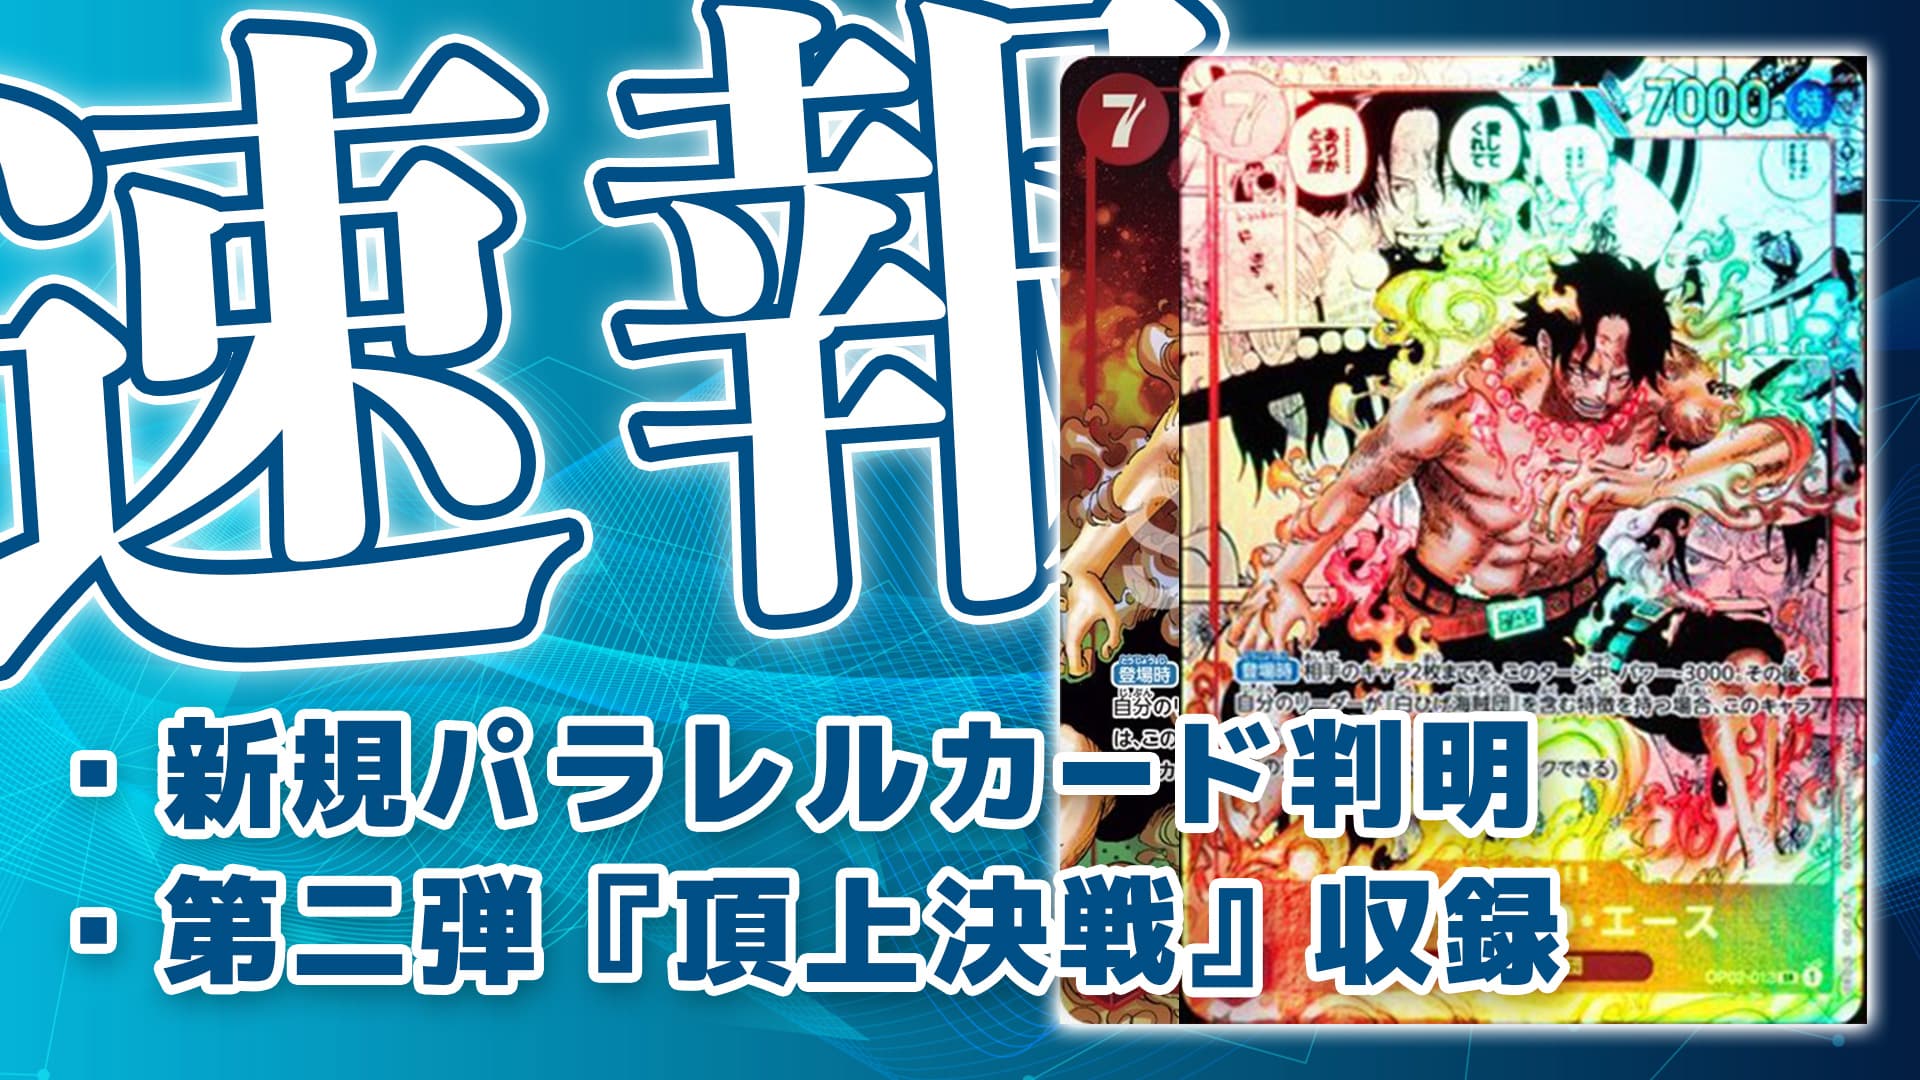 ワンピースカードゲーム 頂上決戦 ポートガス・D・エース スーパー 